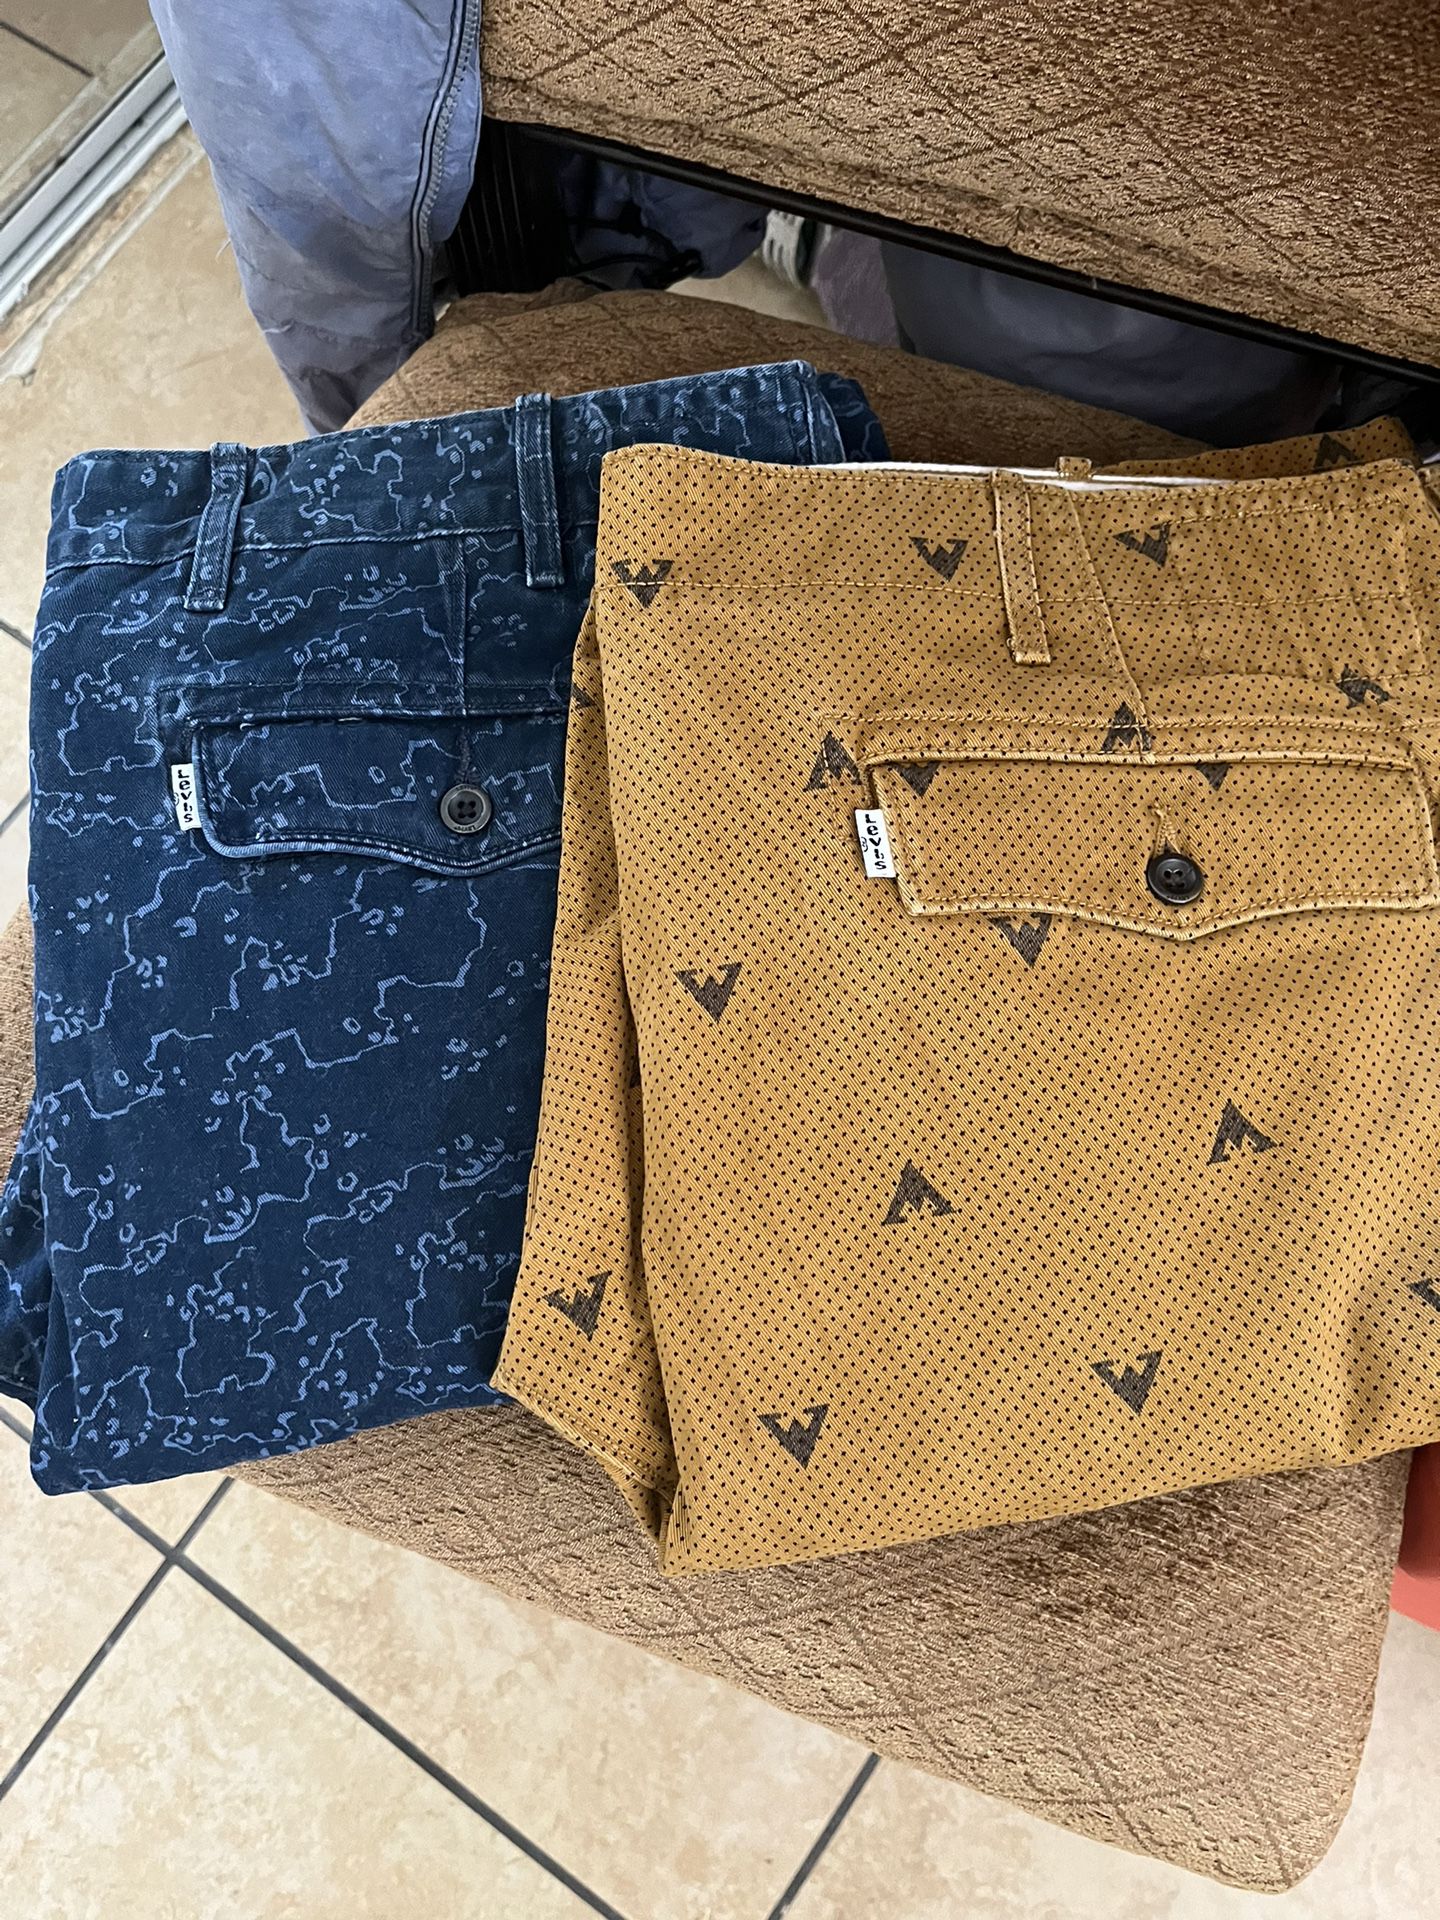 Men Levi’s Jeans 40X 32”. $15 each one 